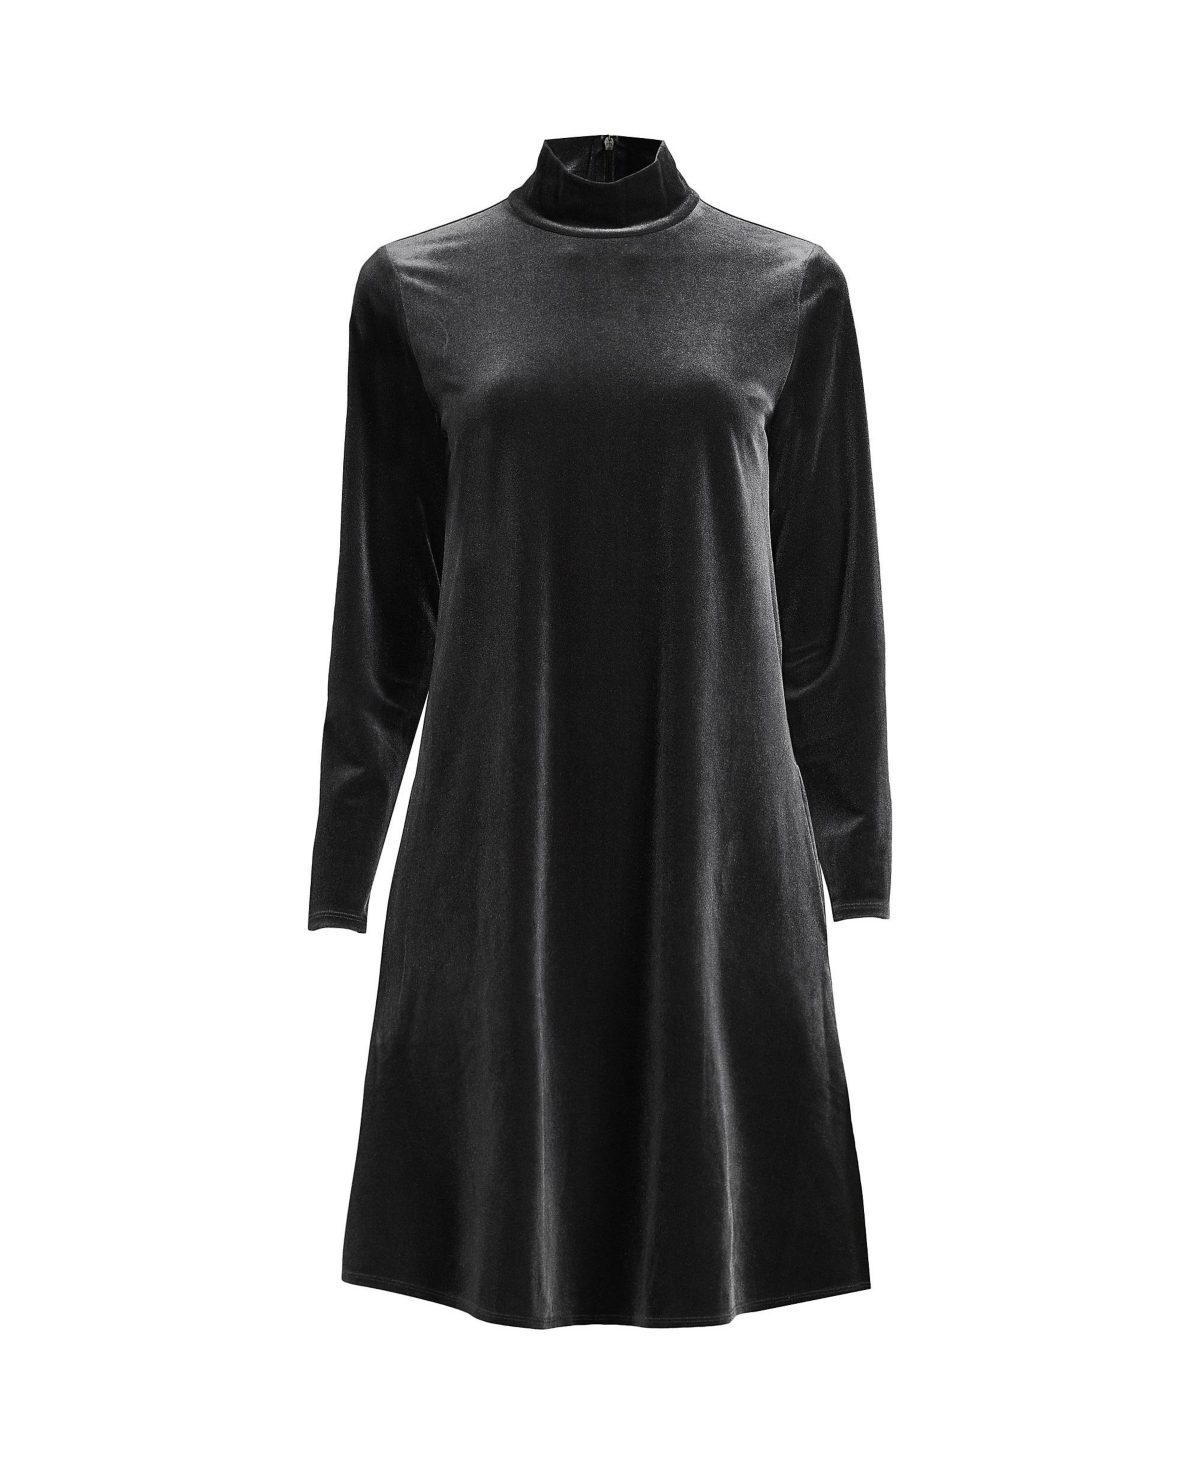 Women's Plus Size Long Sleeve Velvet Turtleneck Dress - Black